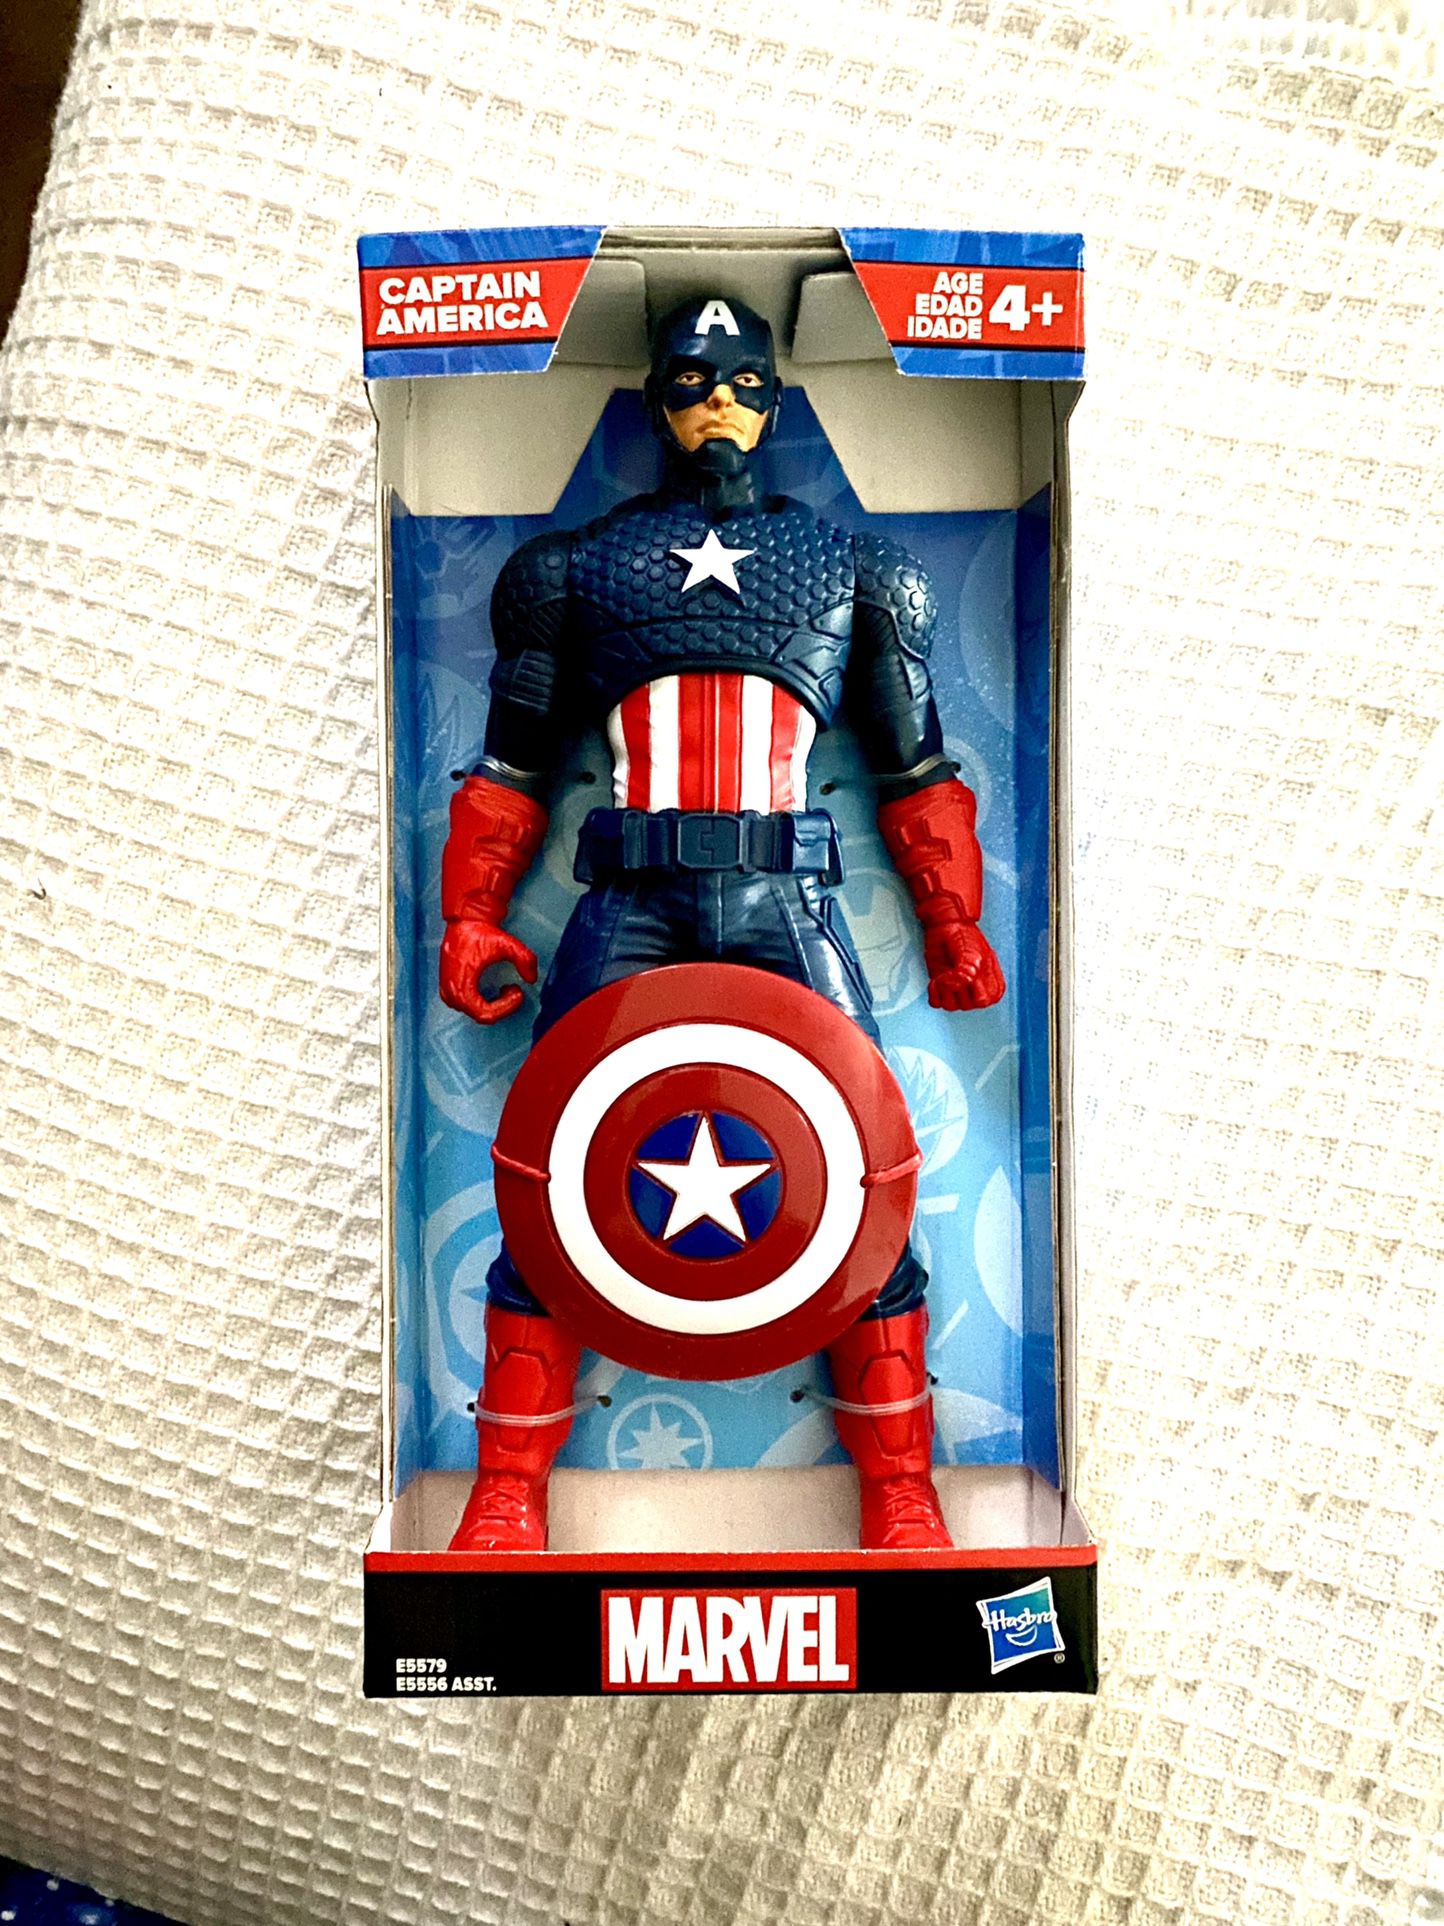 Disney Marvel Captain America Hasbro 9" Action Figure Avengers 2019 Brand New